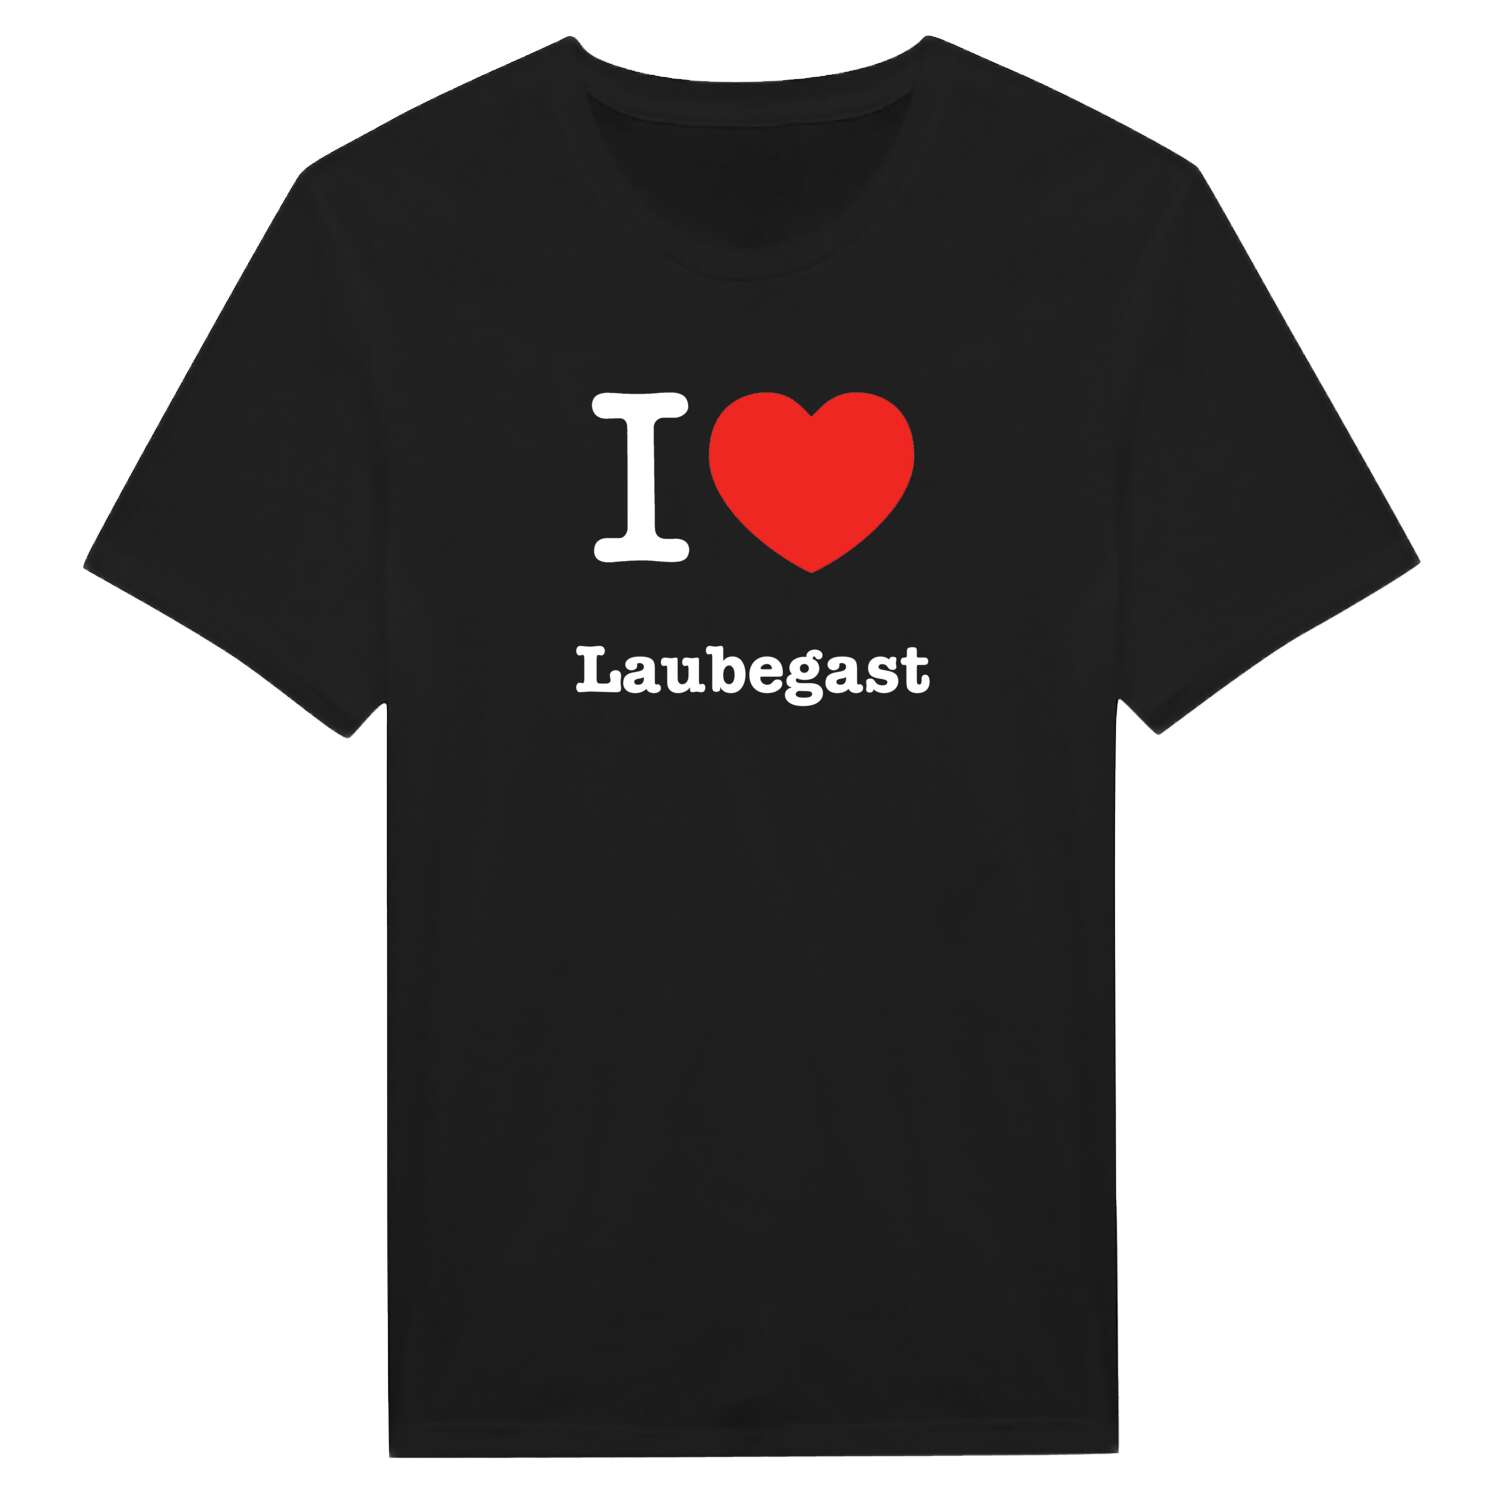 Laubegast T-Shirt »I love«